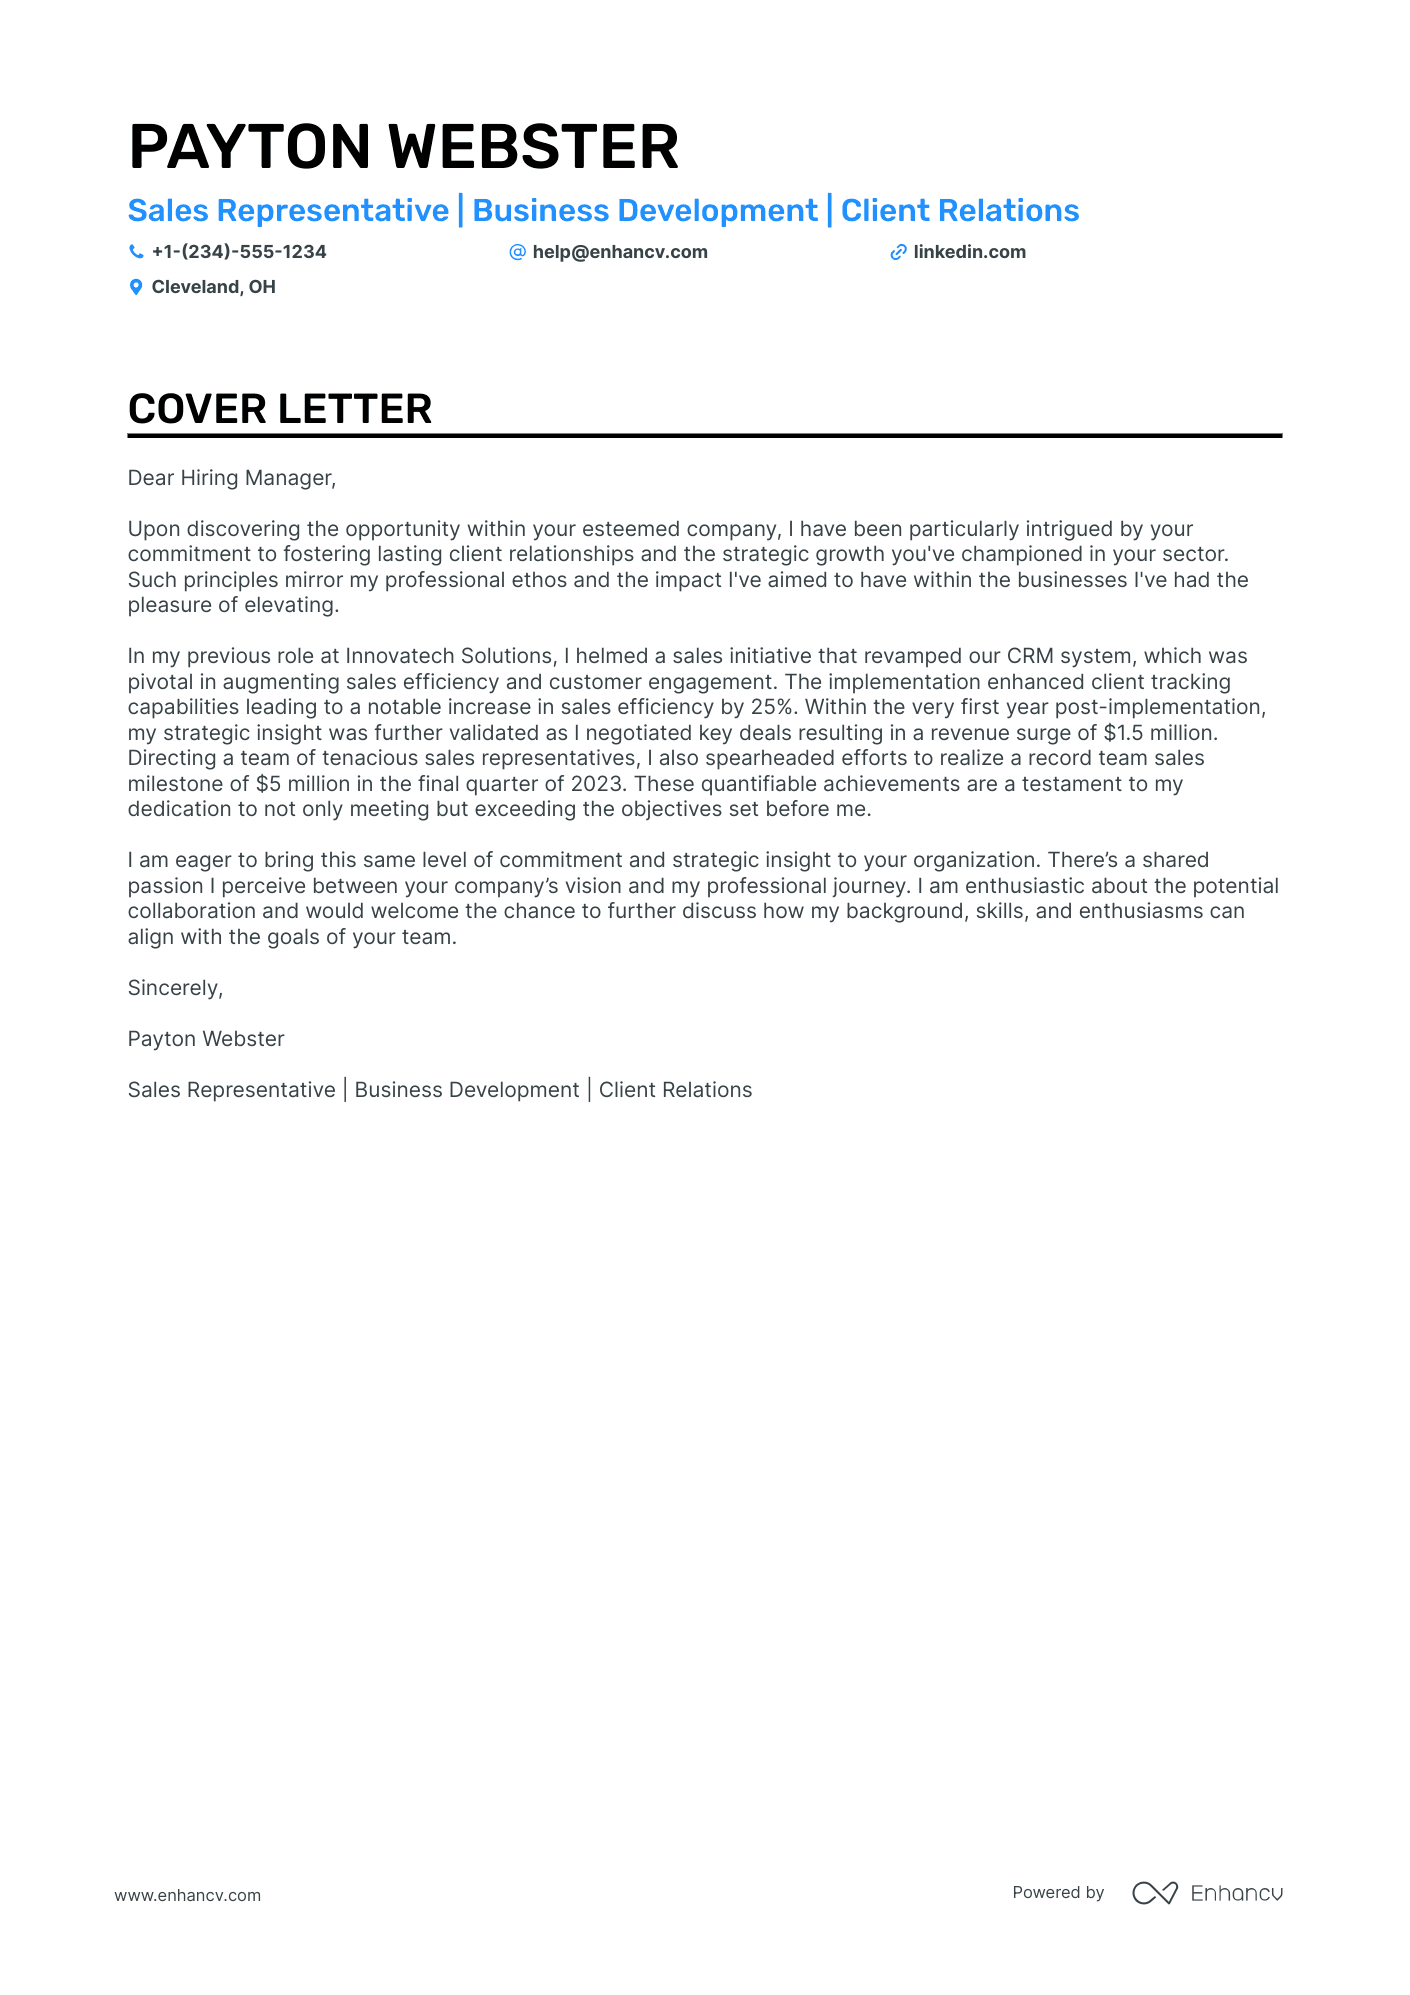 Sales Representative cover letter